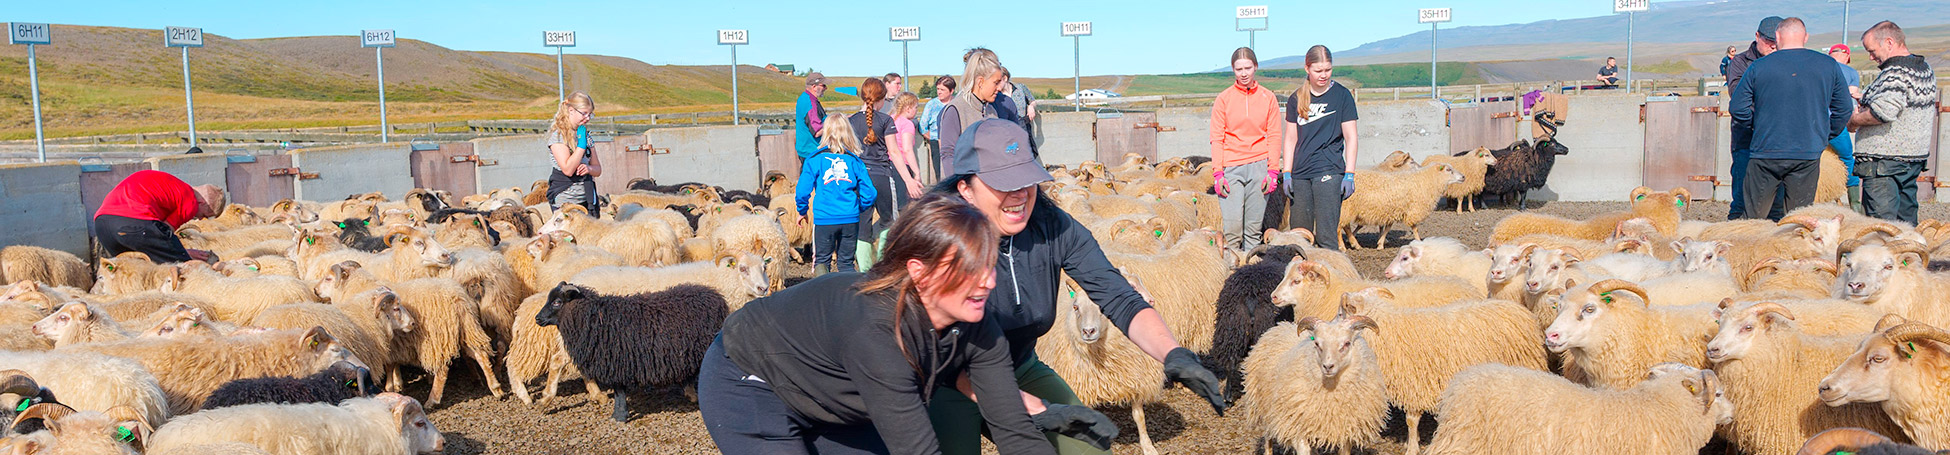 Rettir, das isländische Fest der Schafe